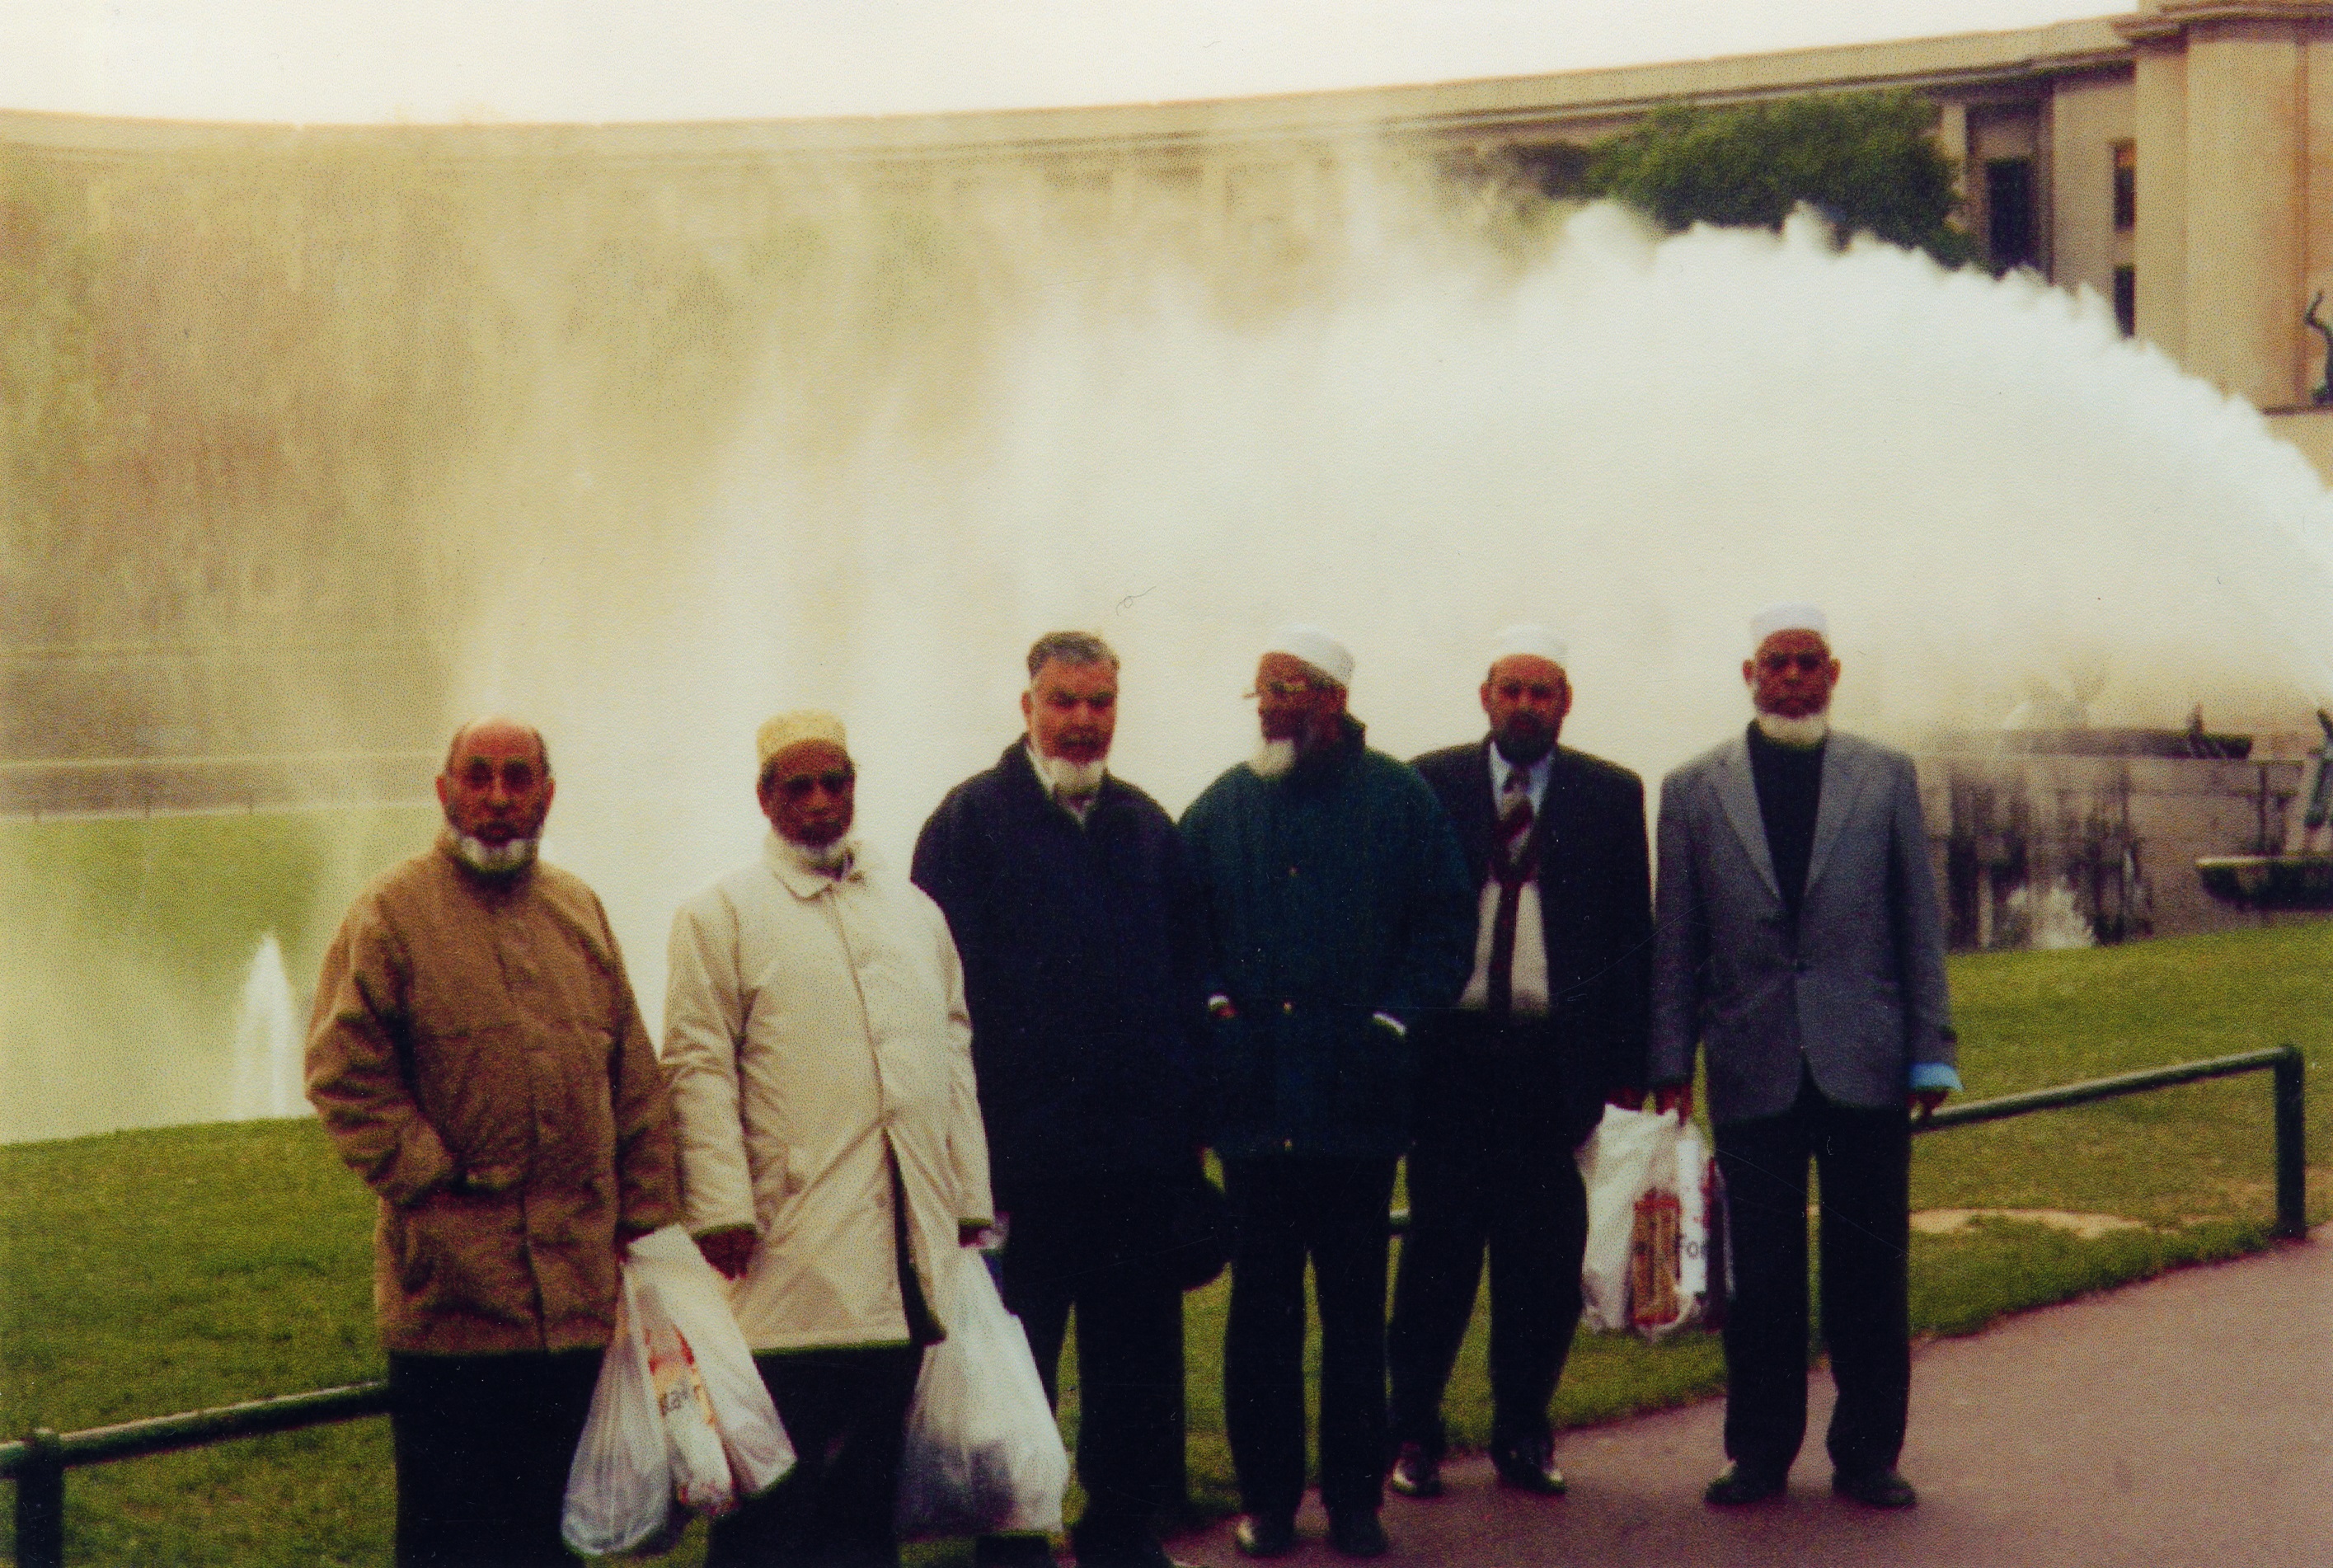 Photograph of Bengali Men's Group